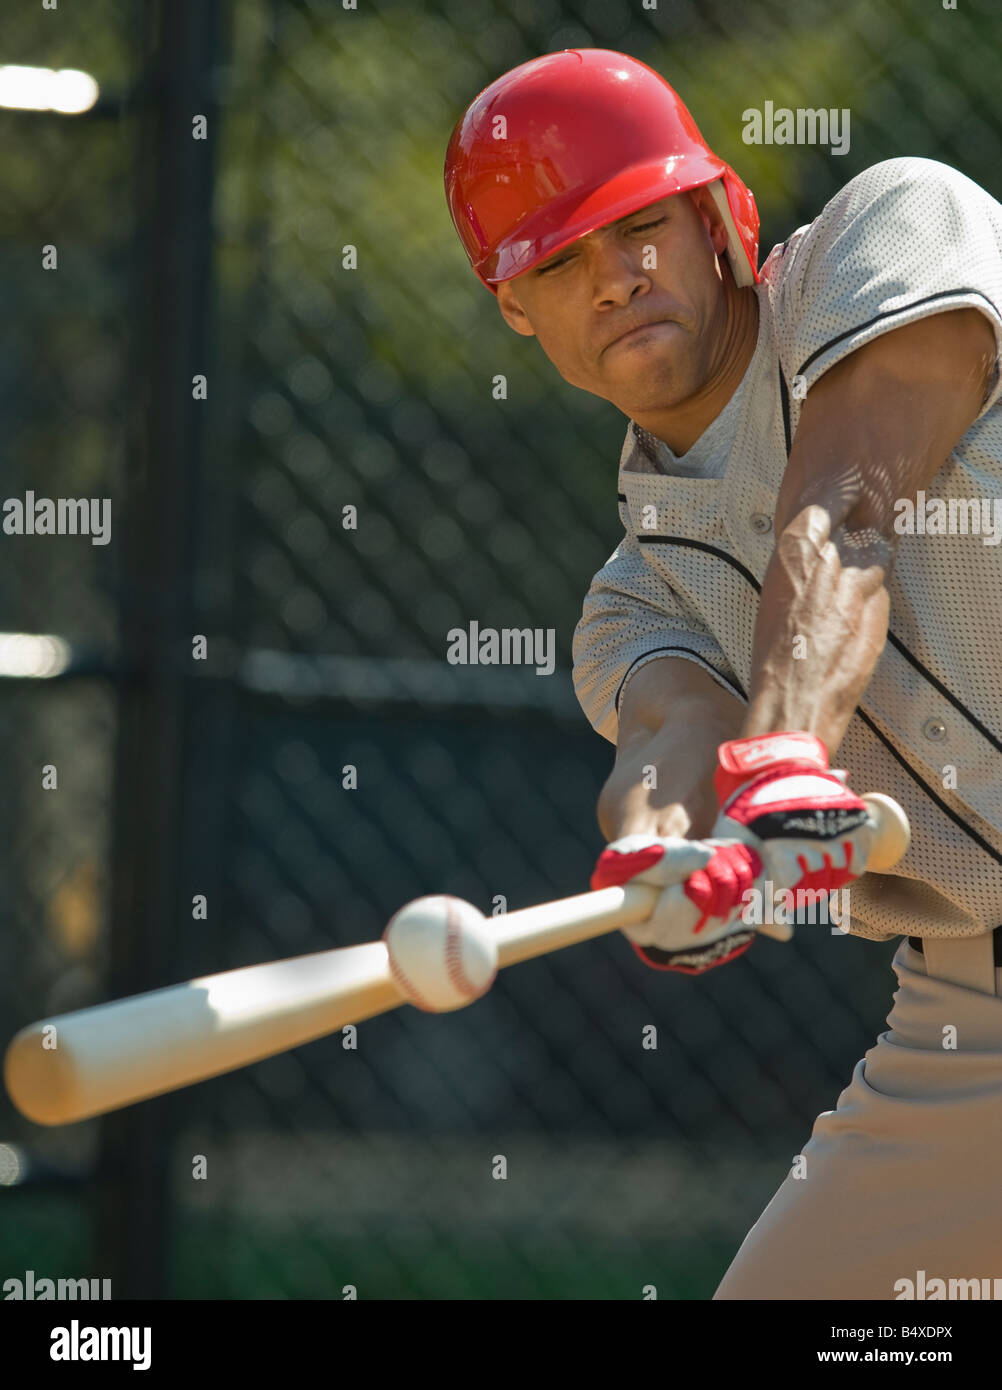 Baseball batter hitting ball Stock Photo - Alamy